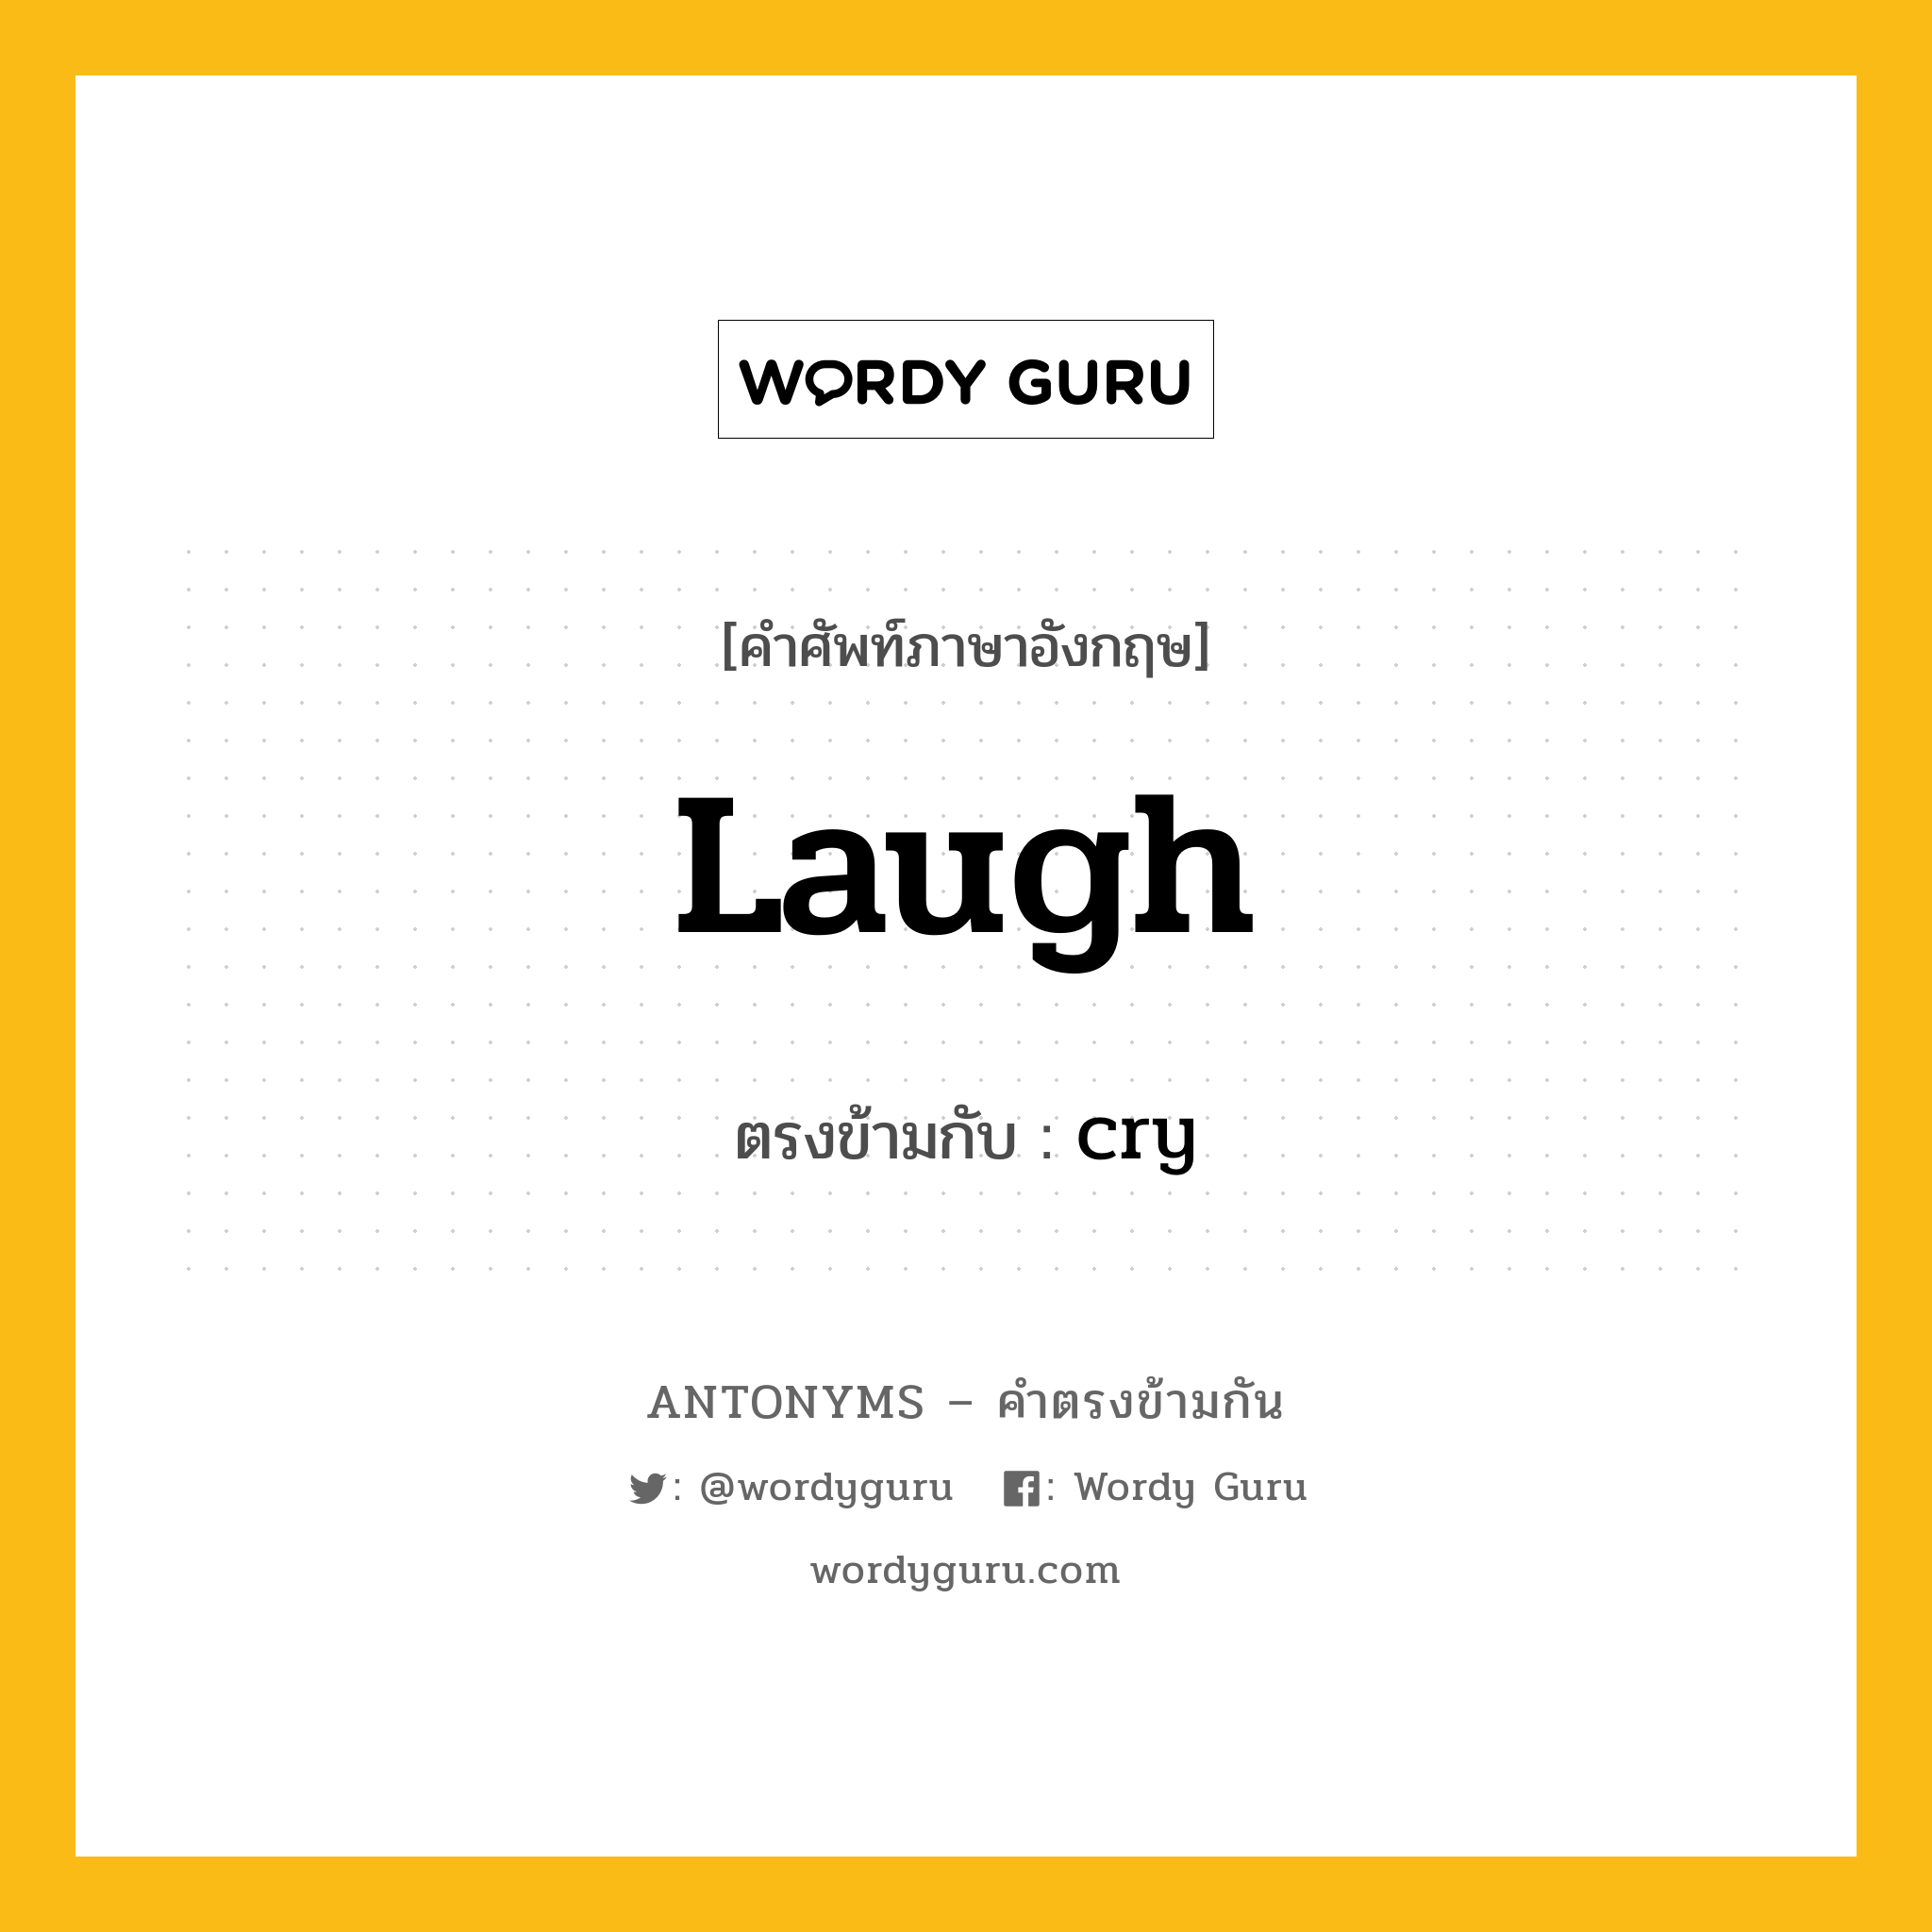 laugh เป็นคำตรงข้ามกับคำไหนบ้าง?, คำศัพท์ภาษาอังกฤษ laugh ตรงข้ามกับ cry หมวด cry